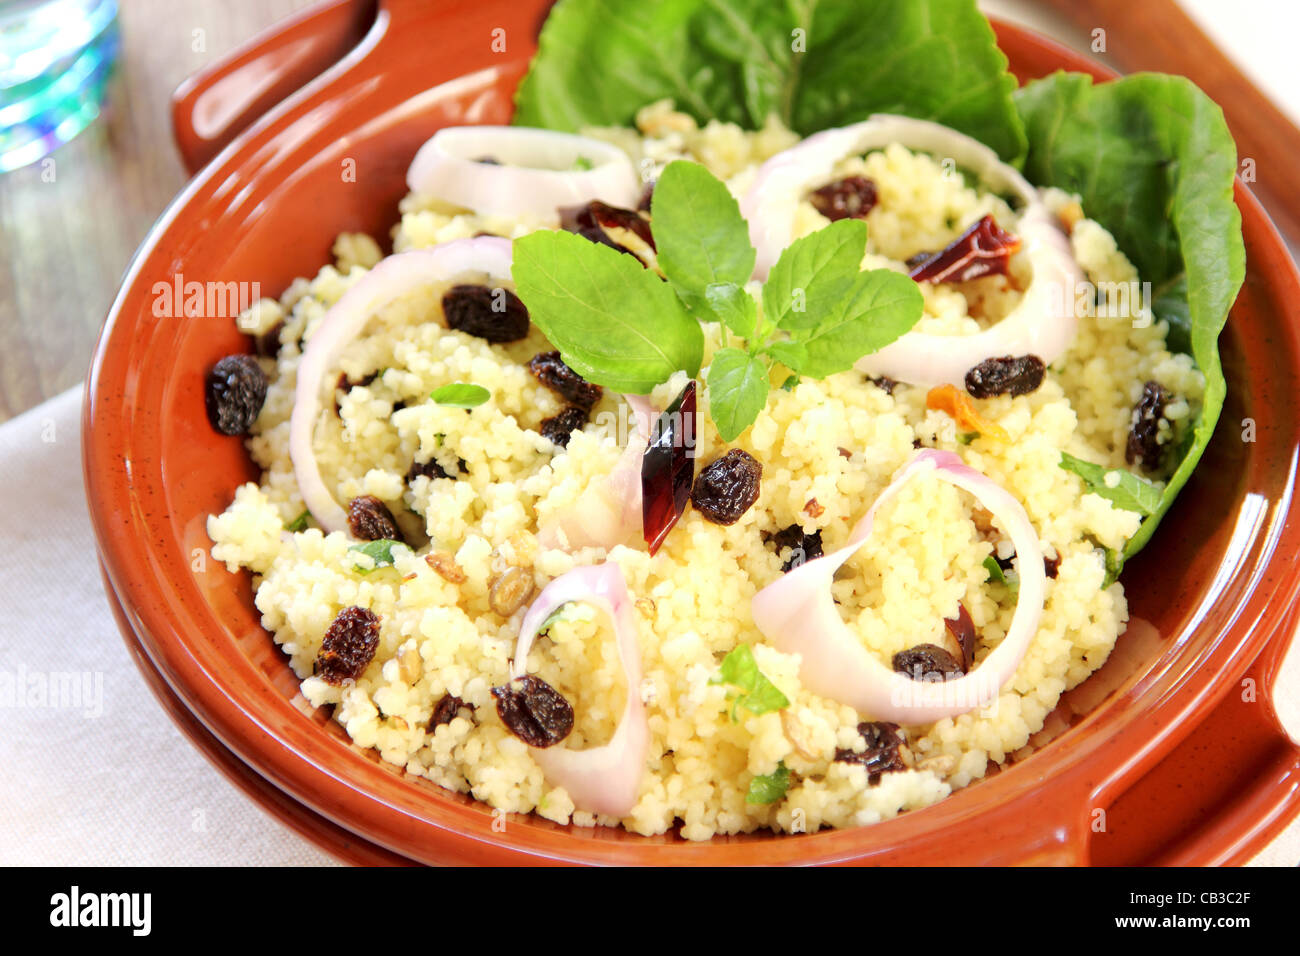 Couscous salad Stock Photo